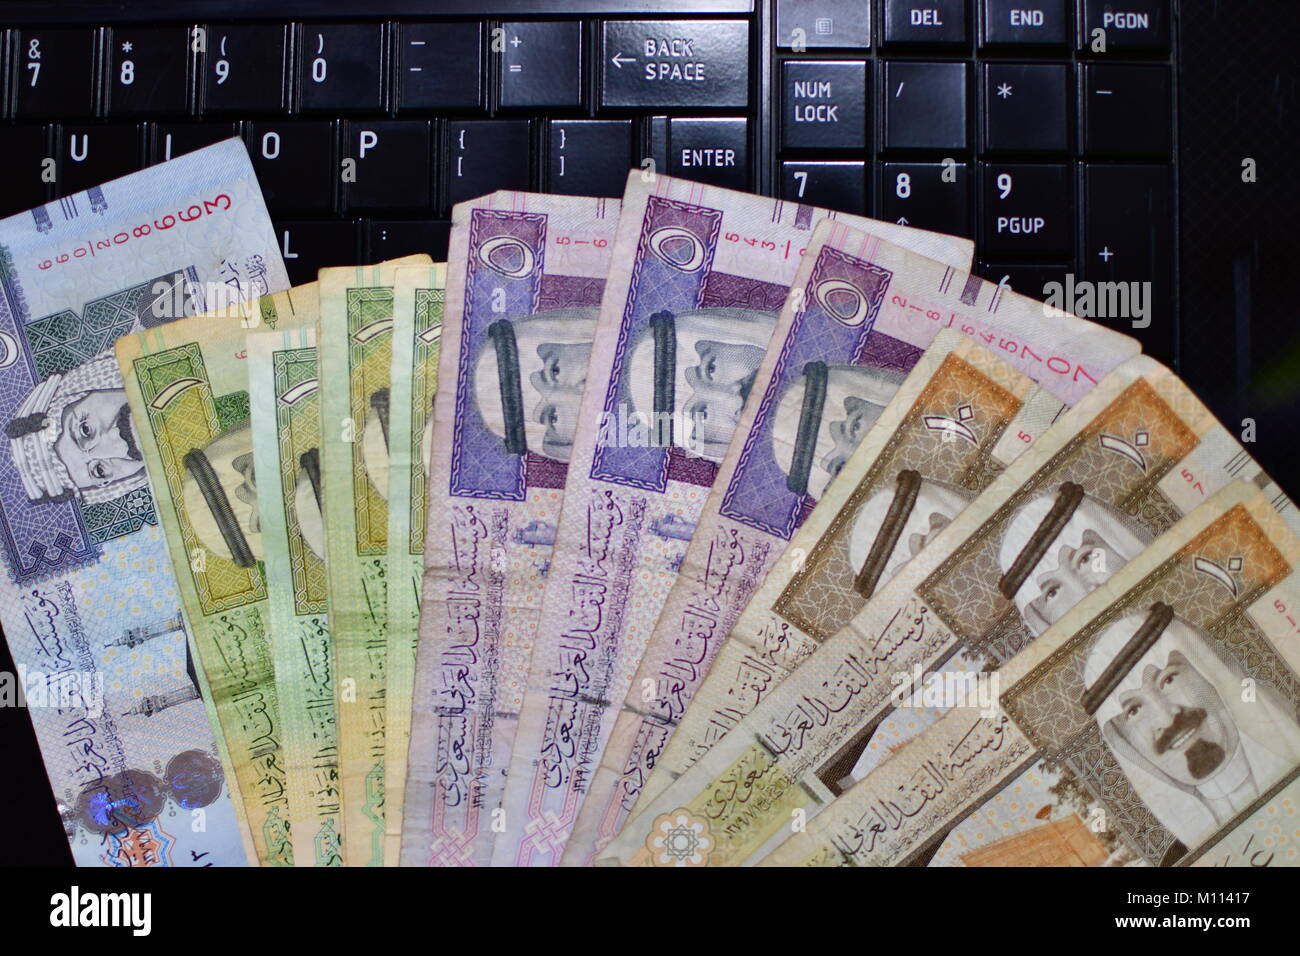 Banknotes of Saudi Arabia Riyals Stock Photo